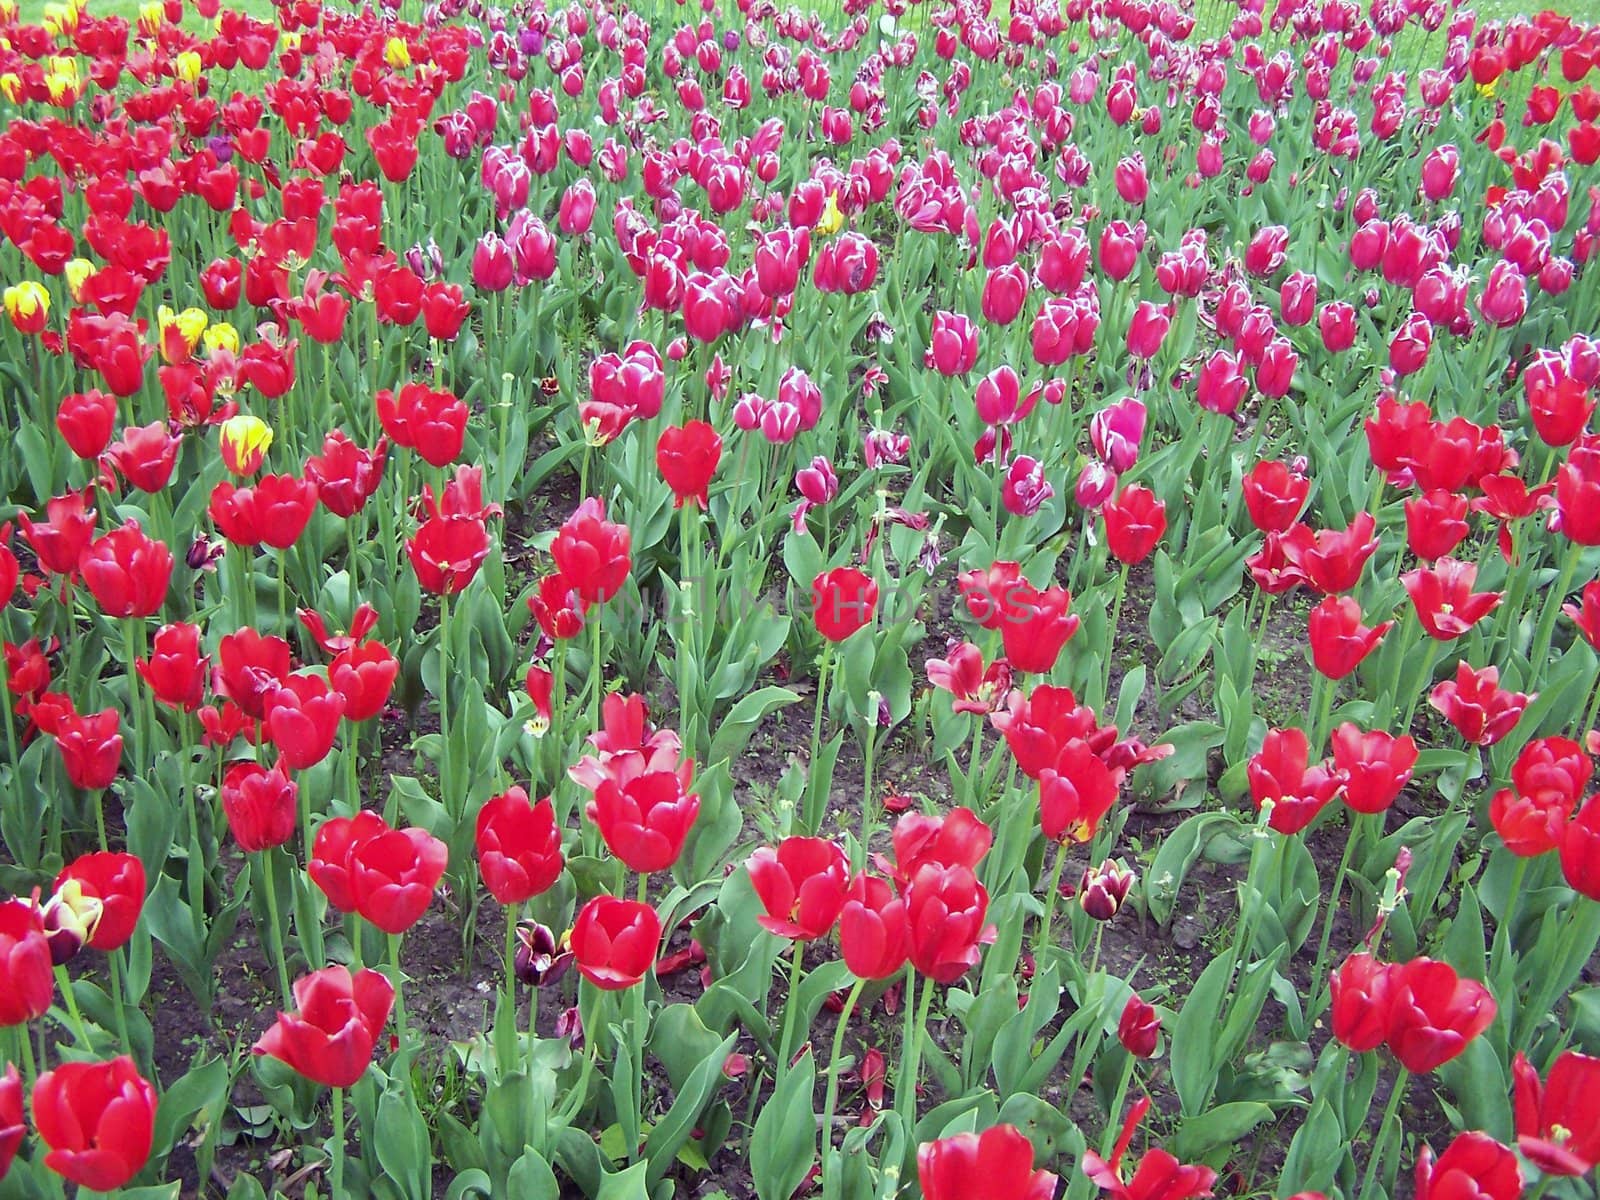 Field of tulips by Lessadar